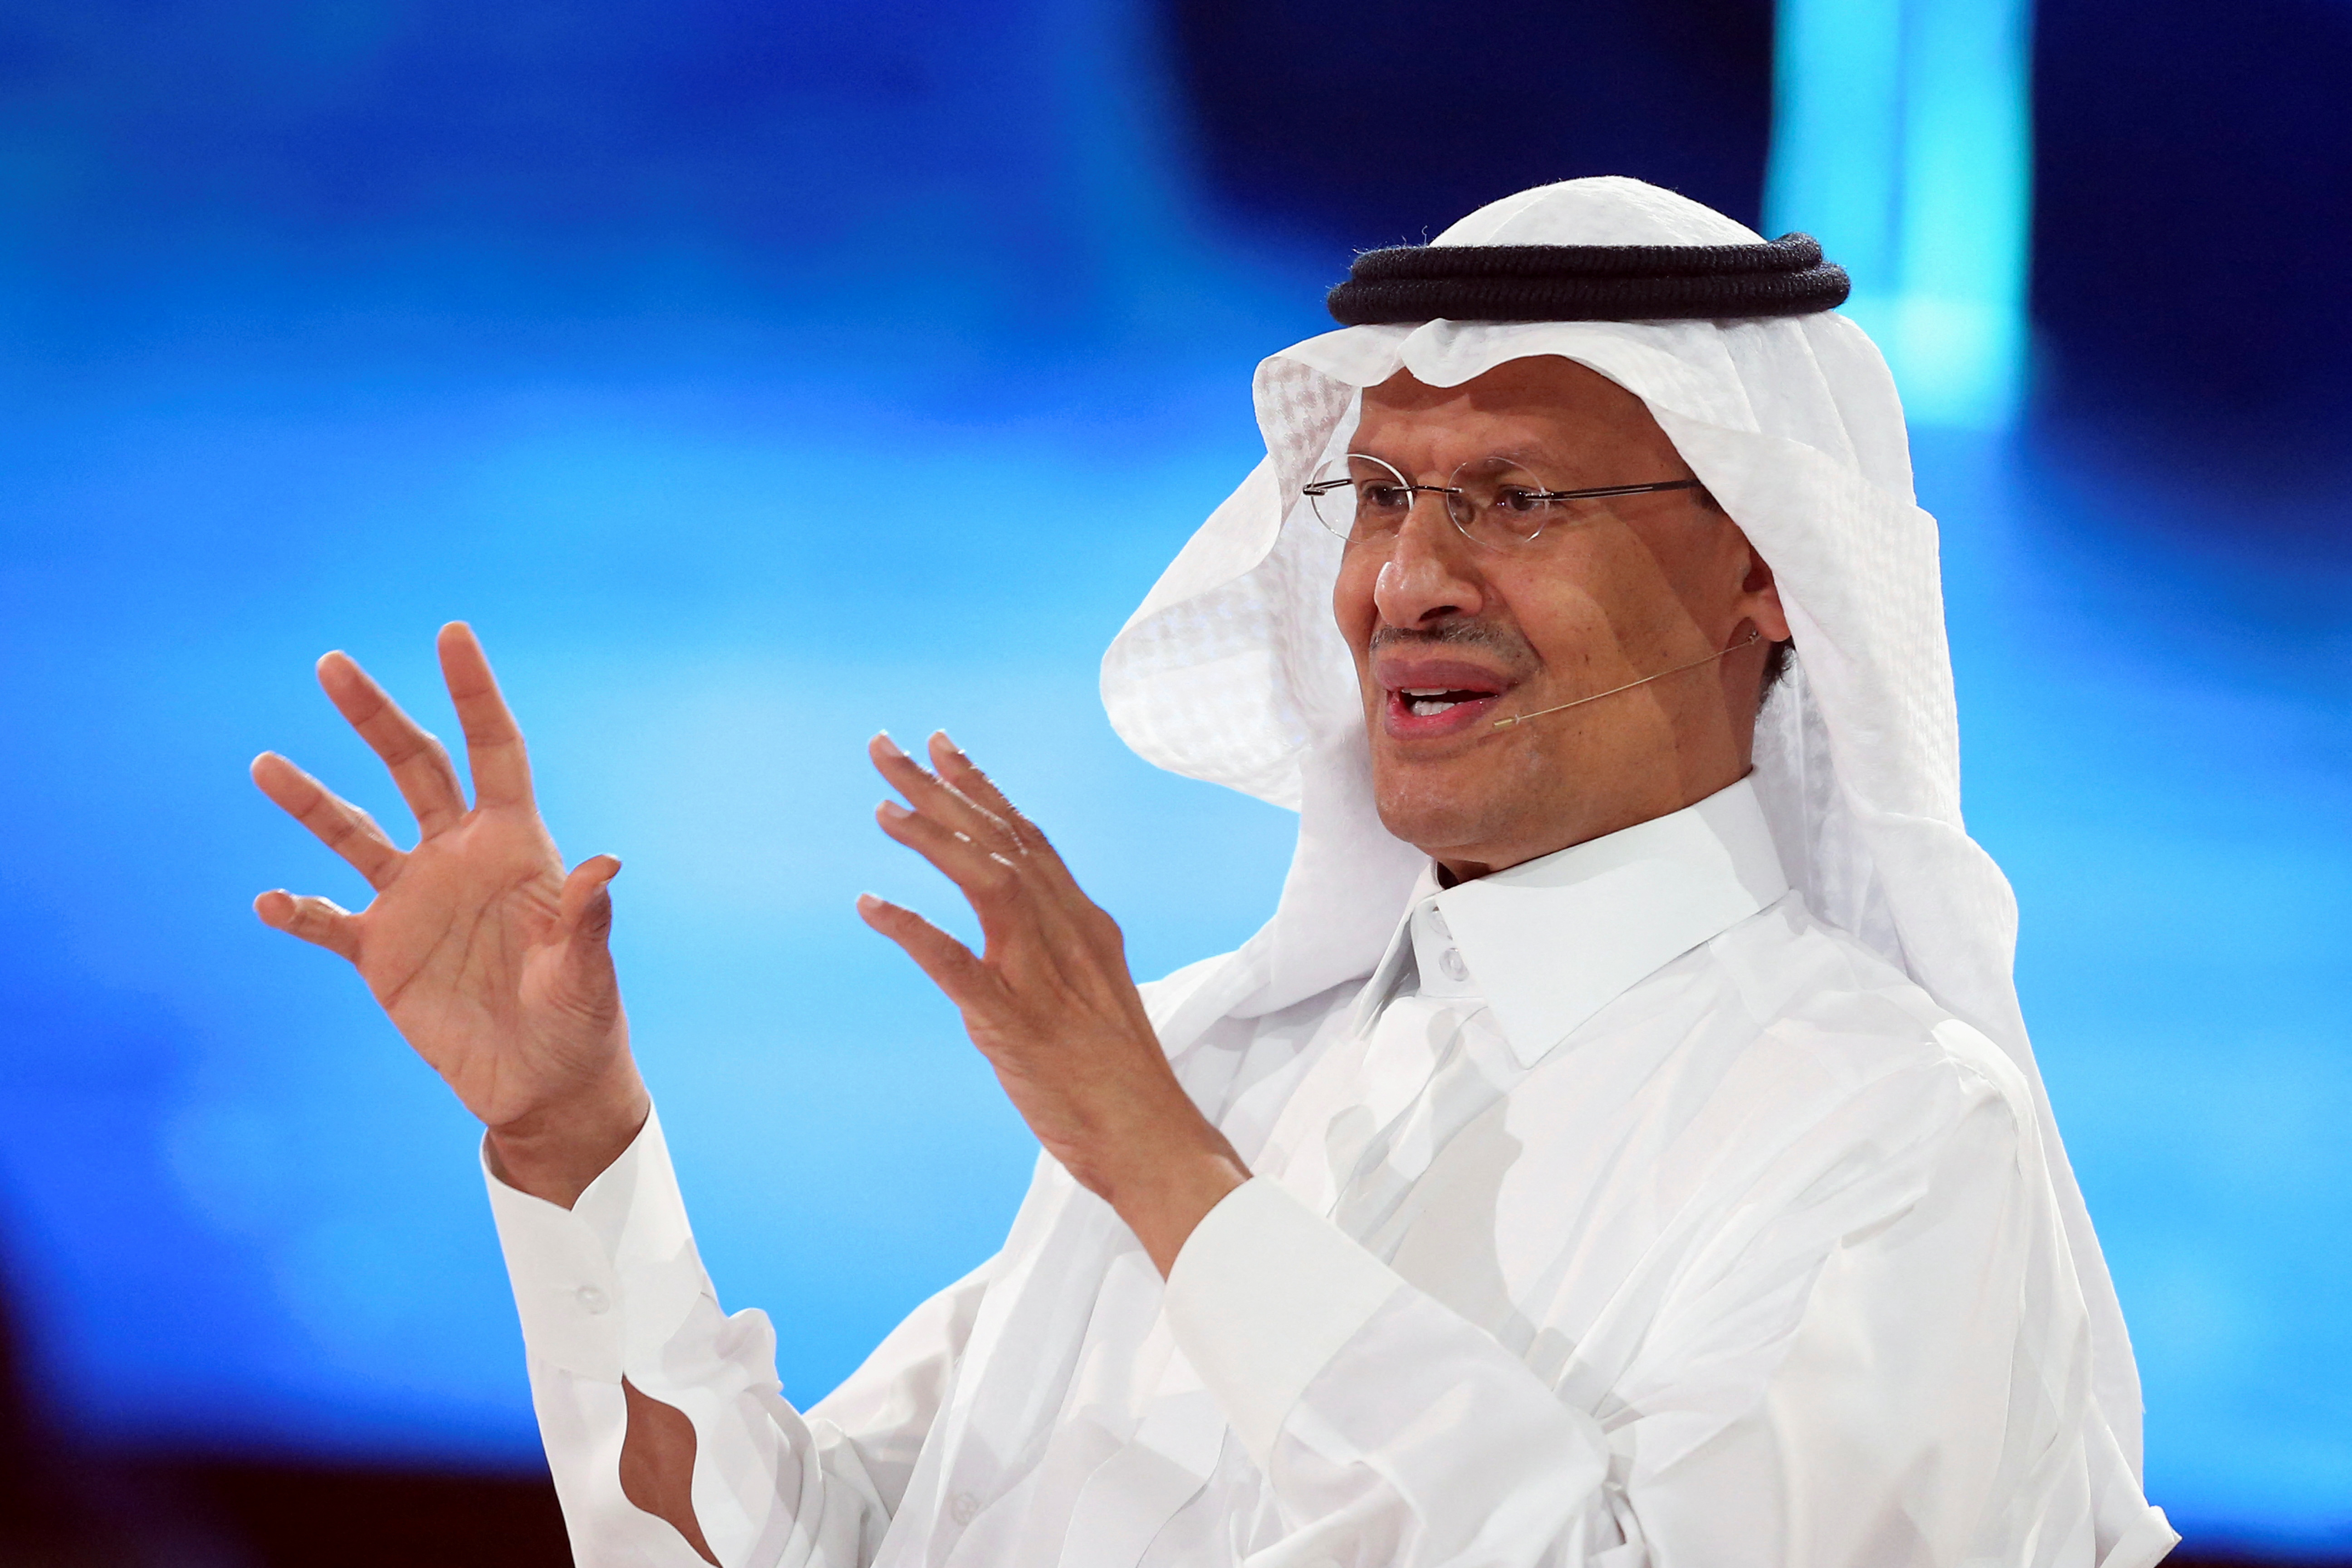 Pétrole : l'Arabie Saoudite accuse les États-Unis de manipuler les cours en puisant dans ses réserves stratégiques